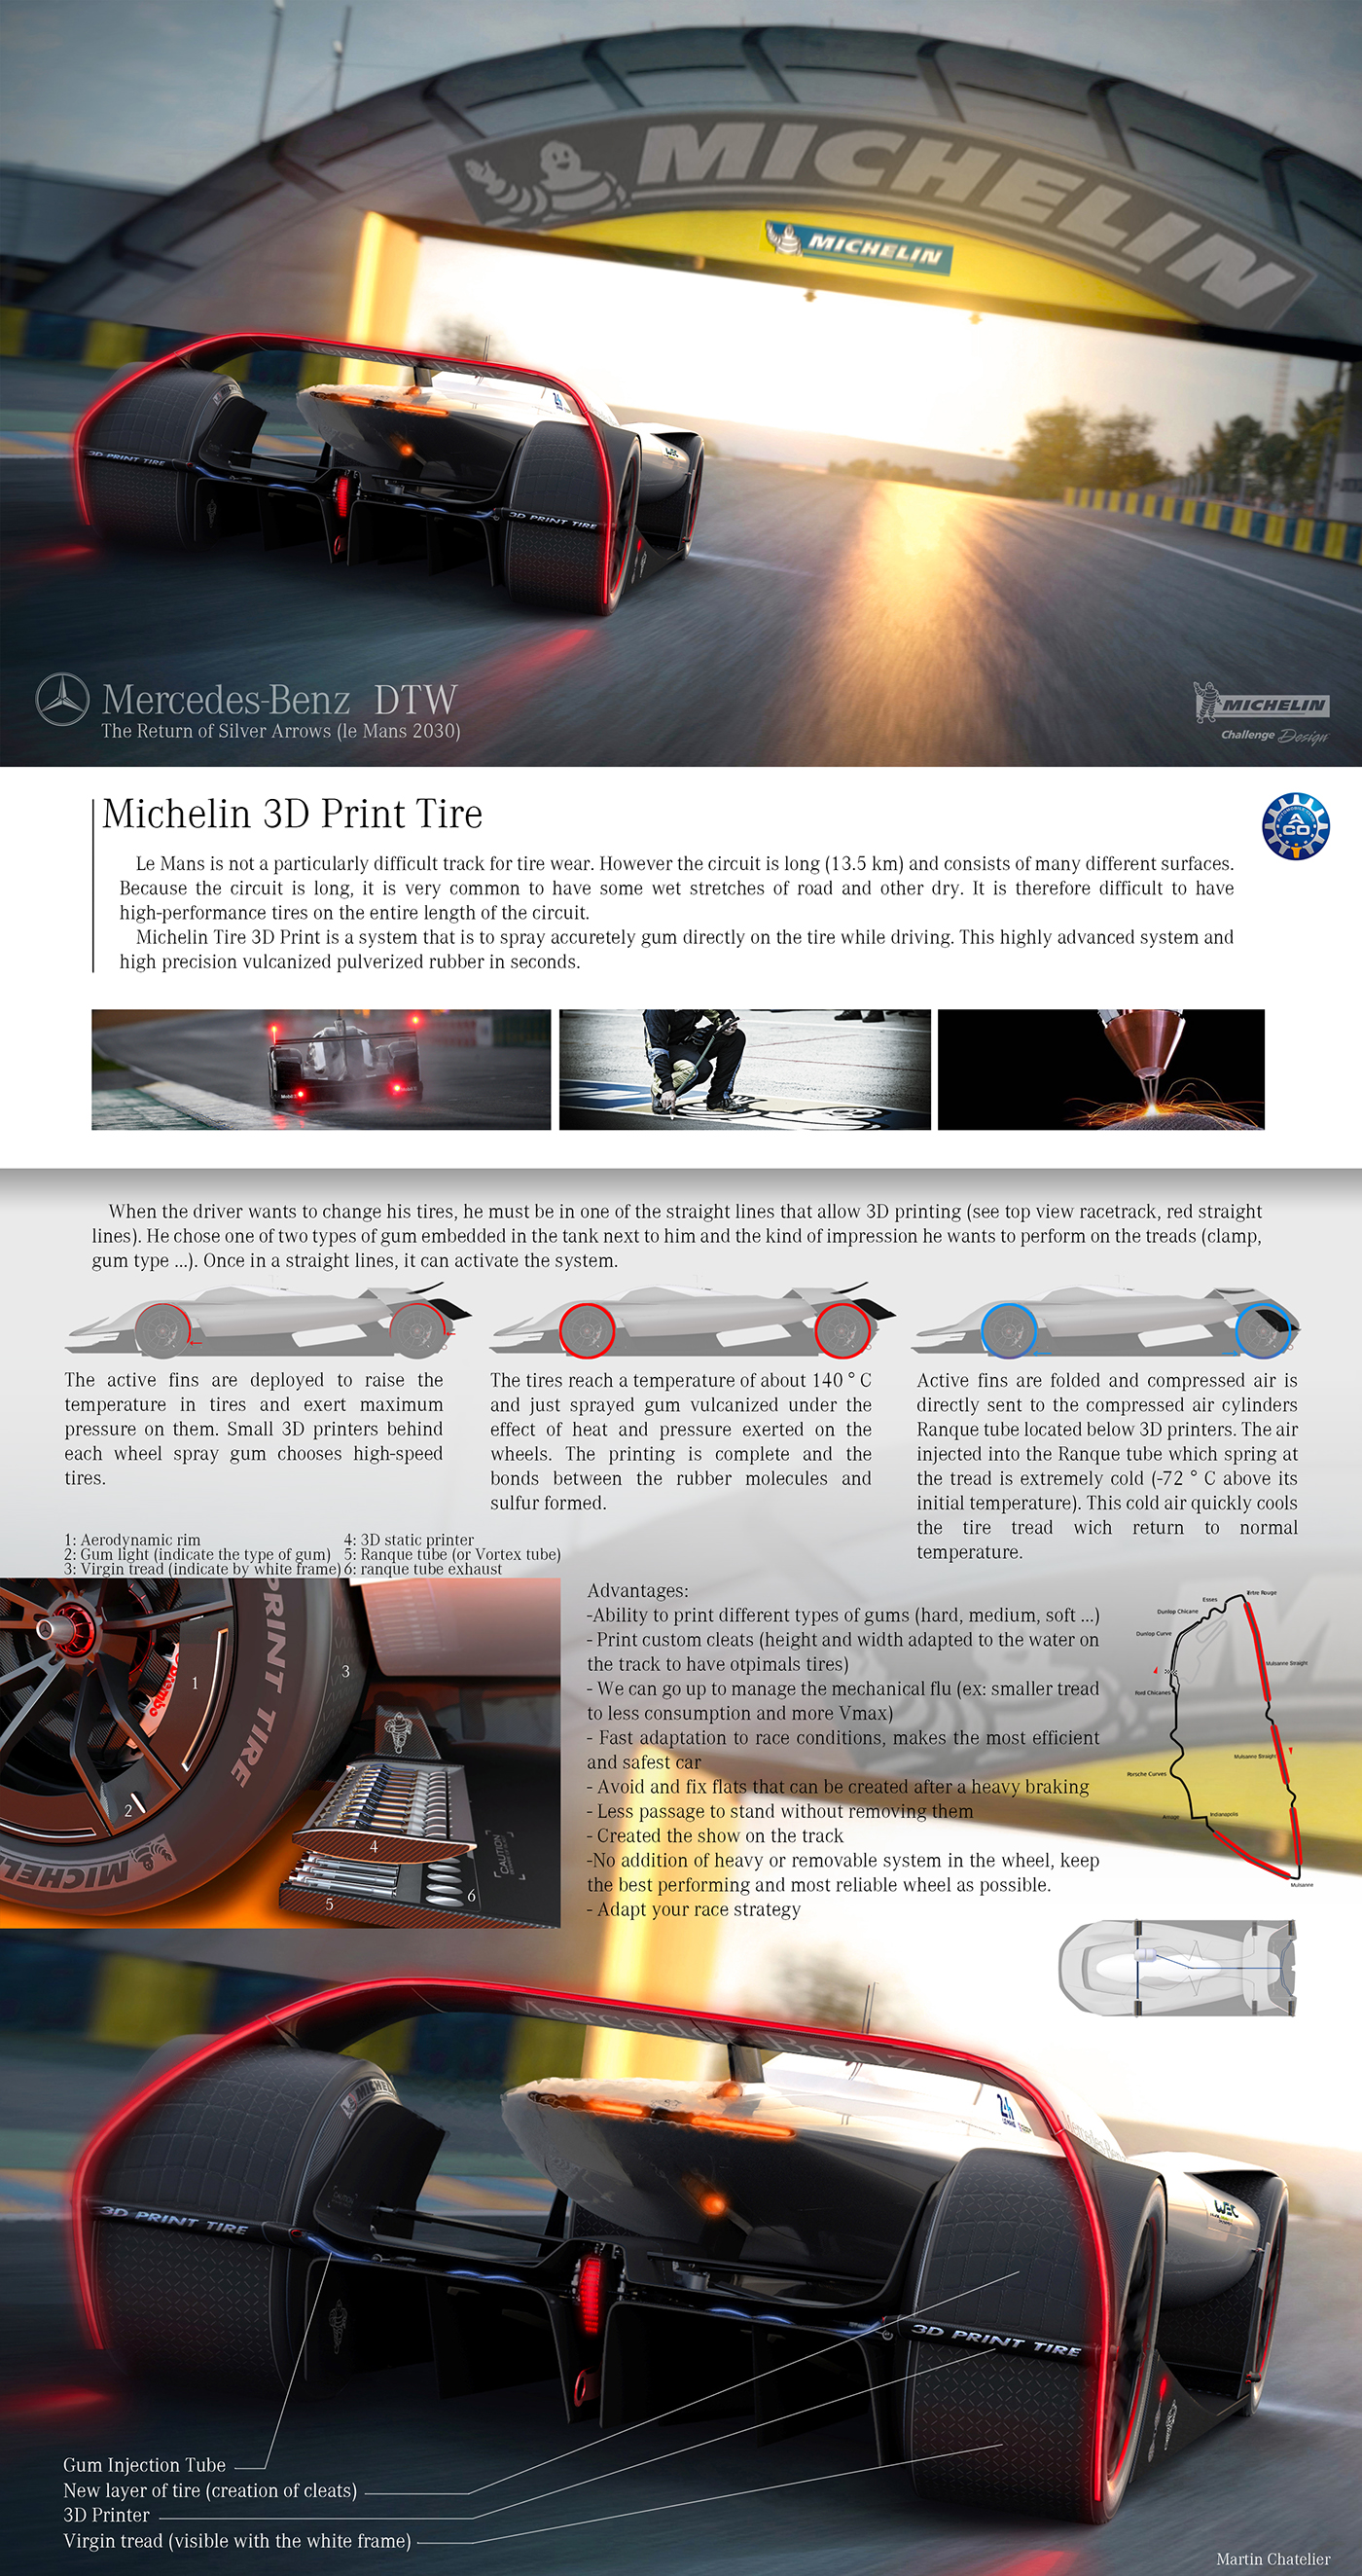 concept car mAns 24h michelin challenge futurist race mercedes lmp